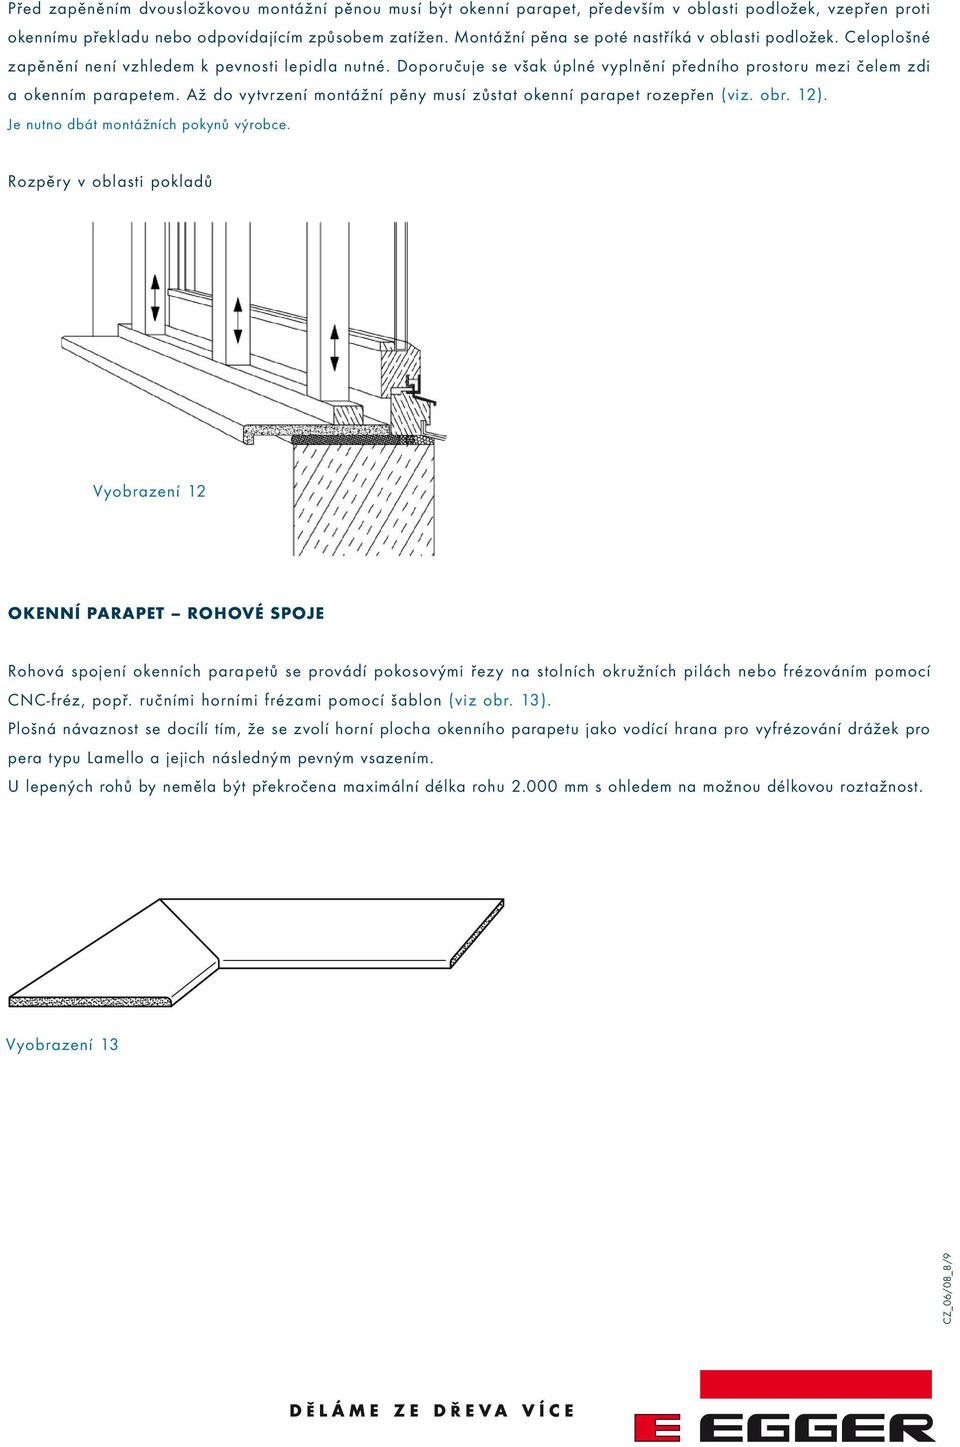 Až do vytvrzení montážní pěny musí zůstat okenní parapet rozepřen (viz. obr. 12). Je nutno dbát montážních pokynů výrobce.